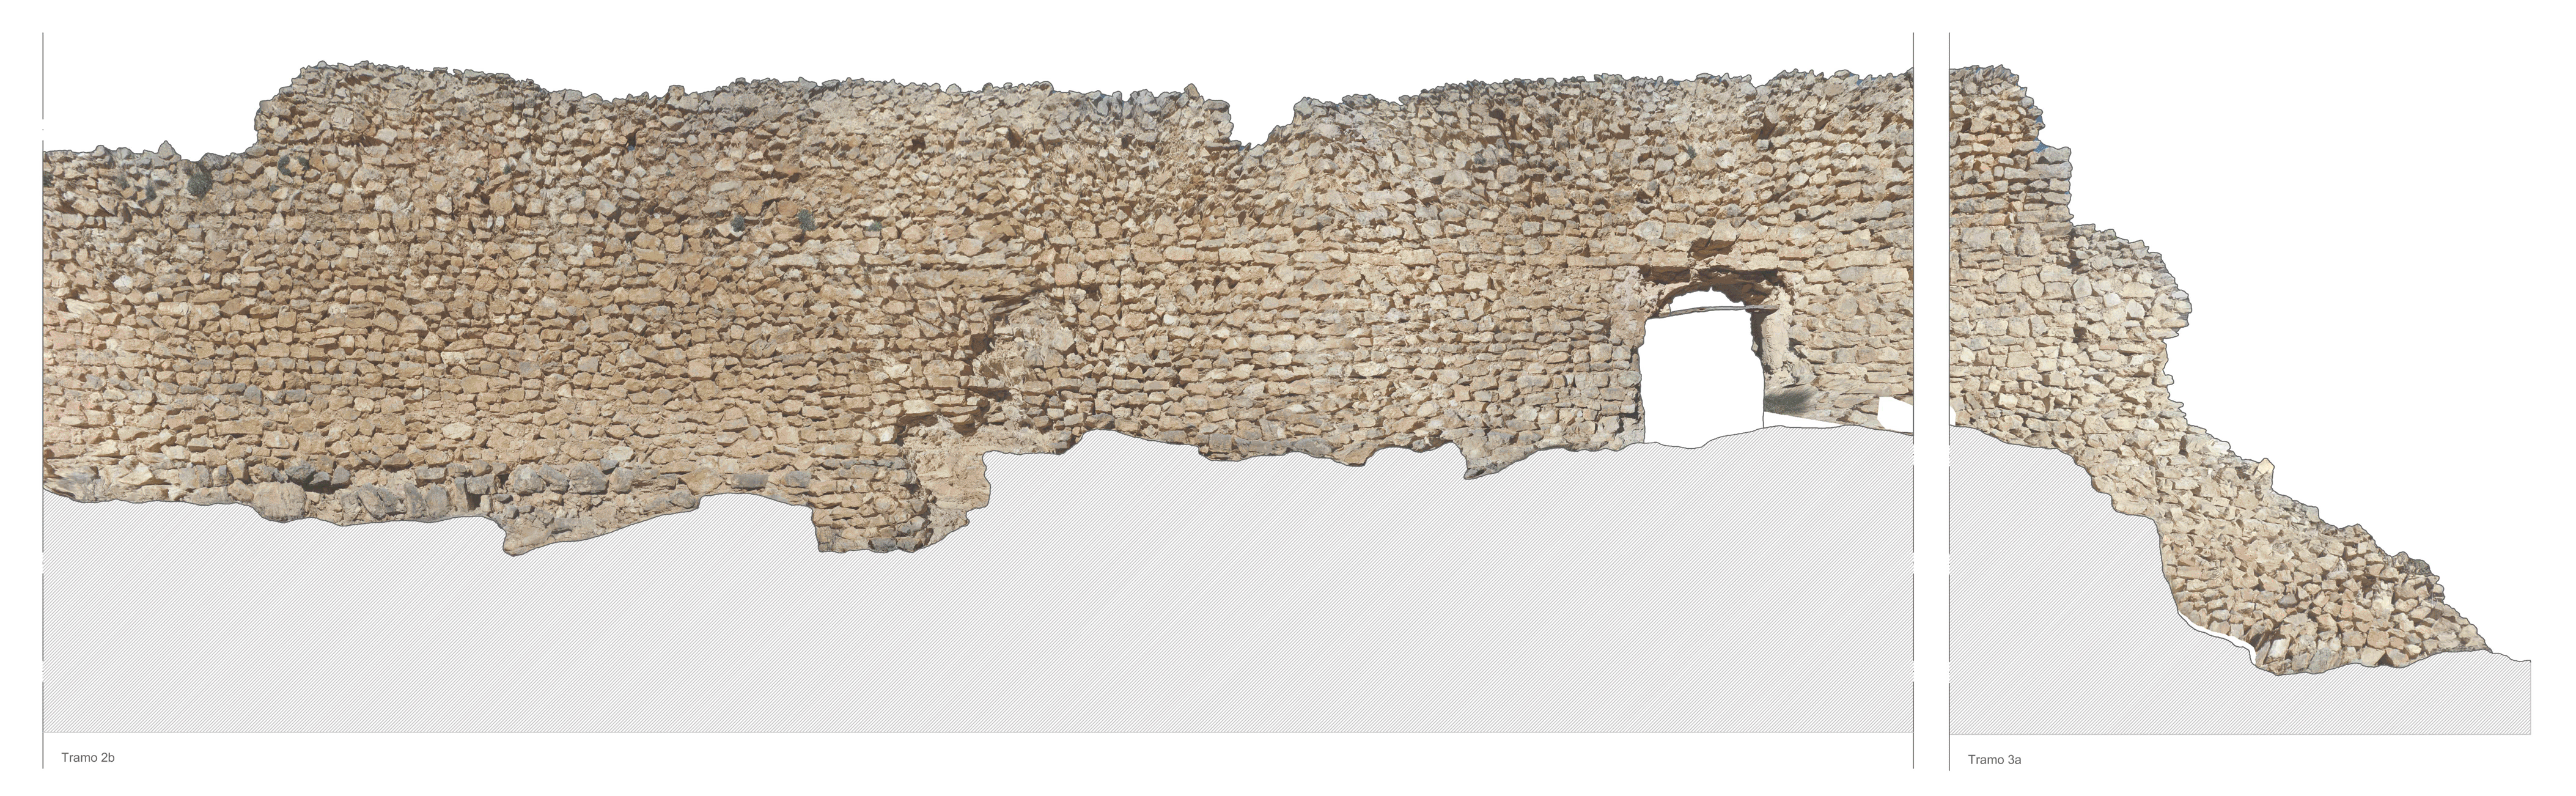 Proceso de Restauración de la Muralla de Albarracín